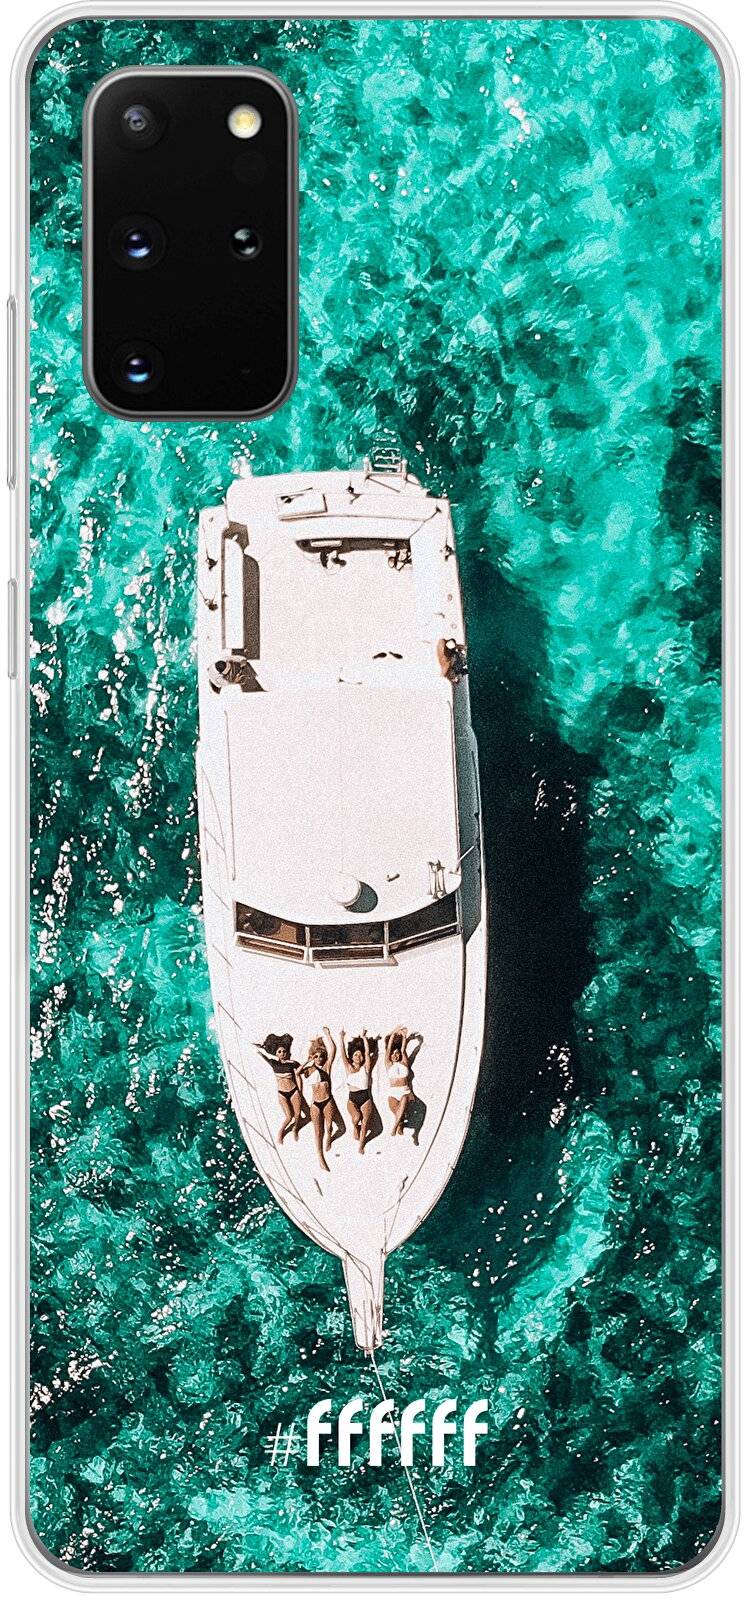 Yacht Life Galaxy S20+